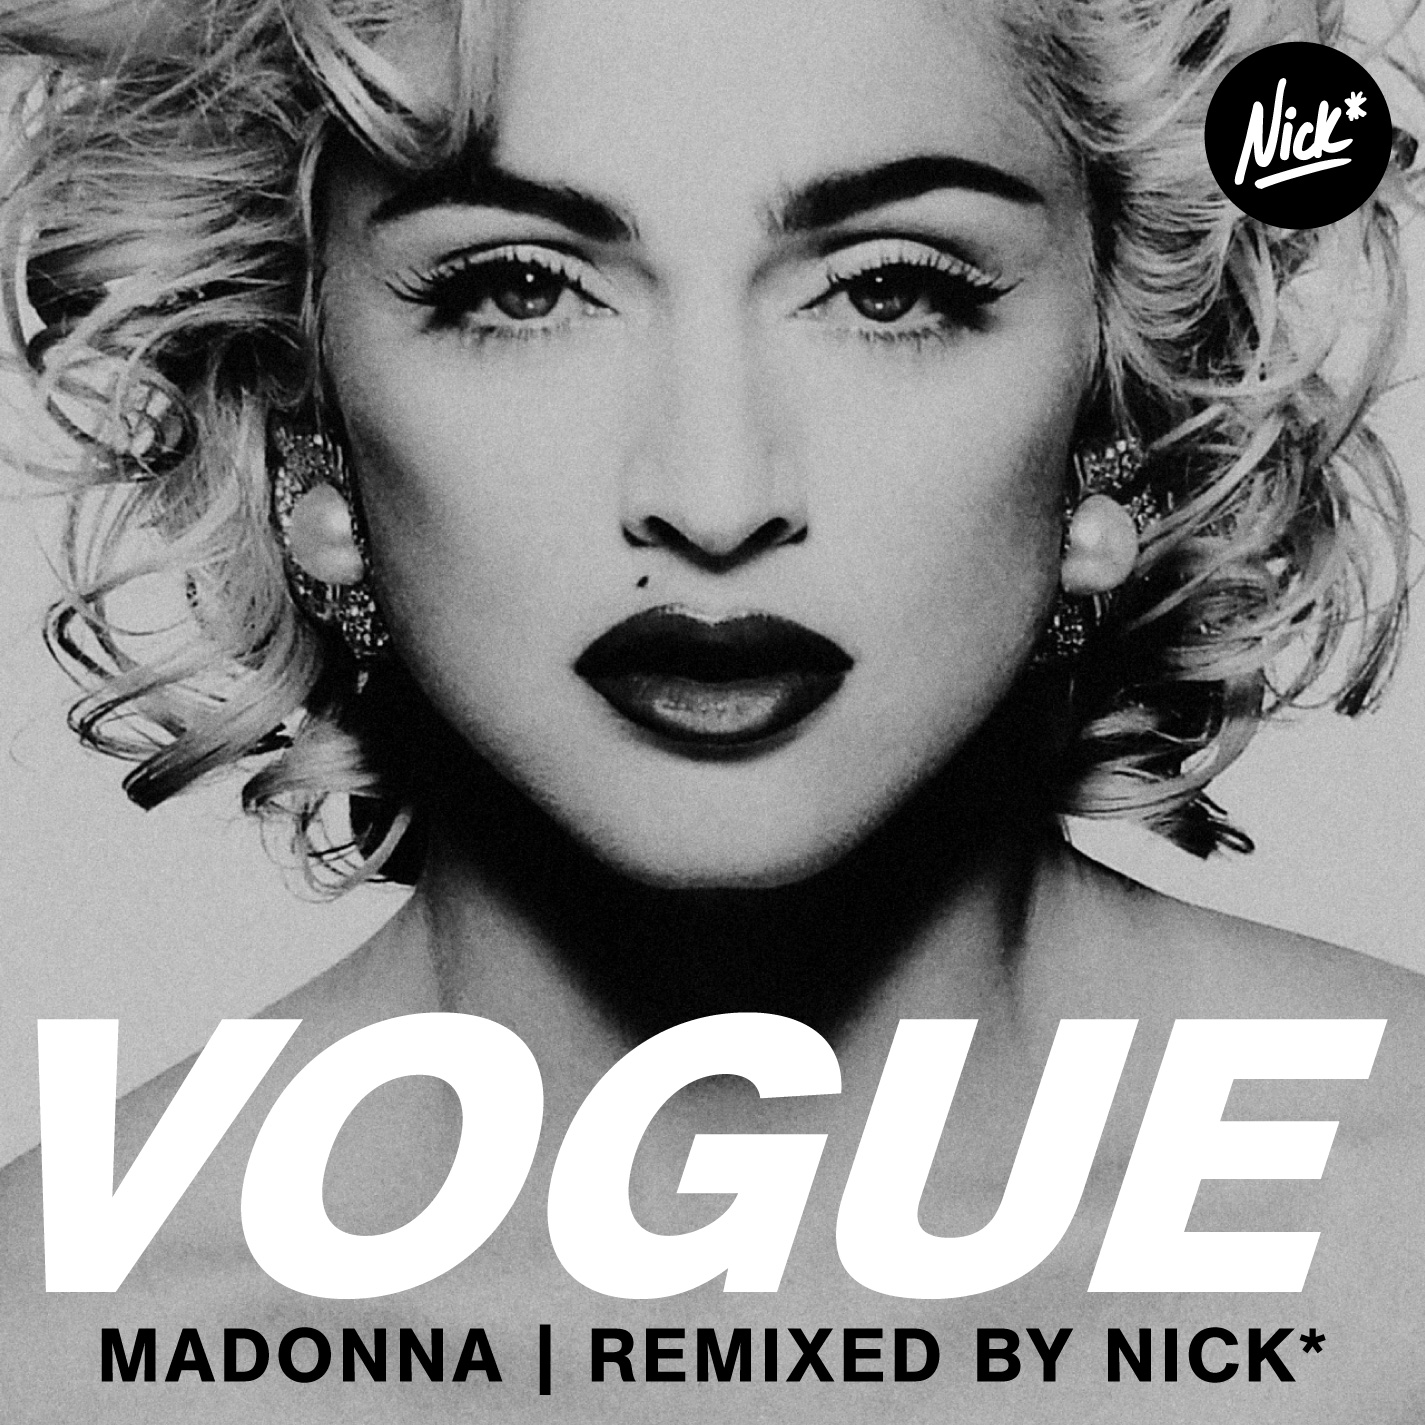 Madonna - Vogue Nick* Remix